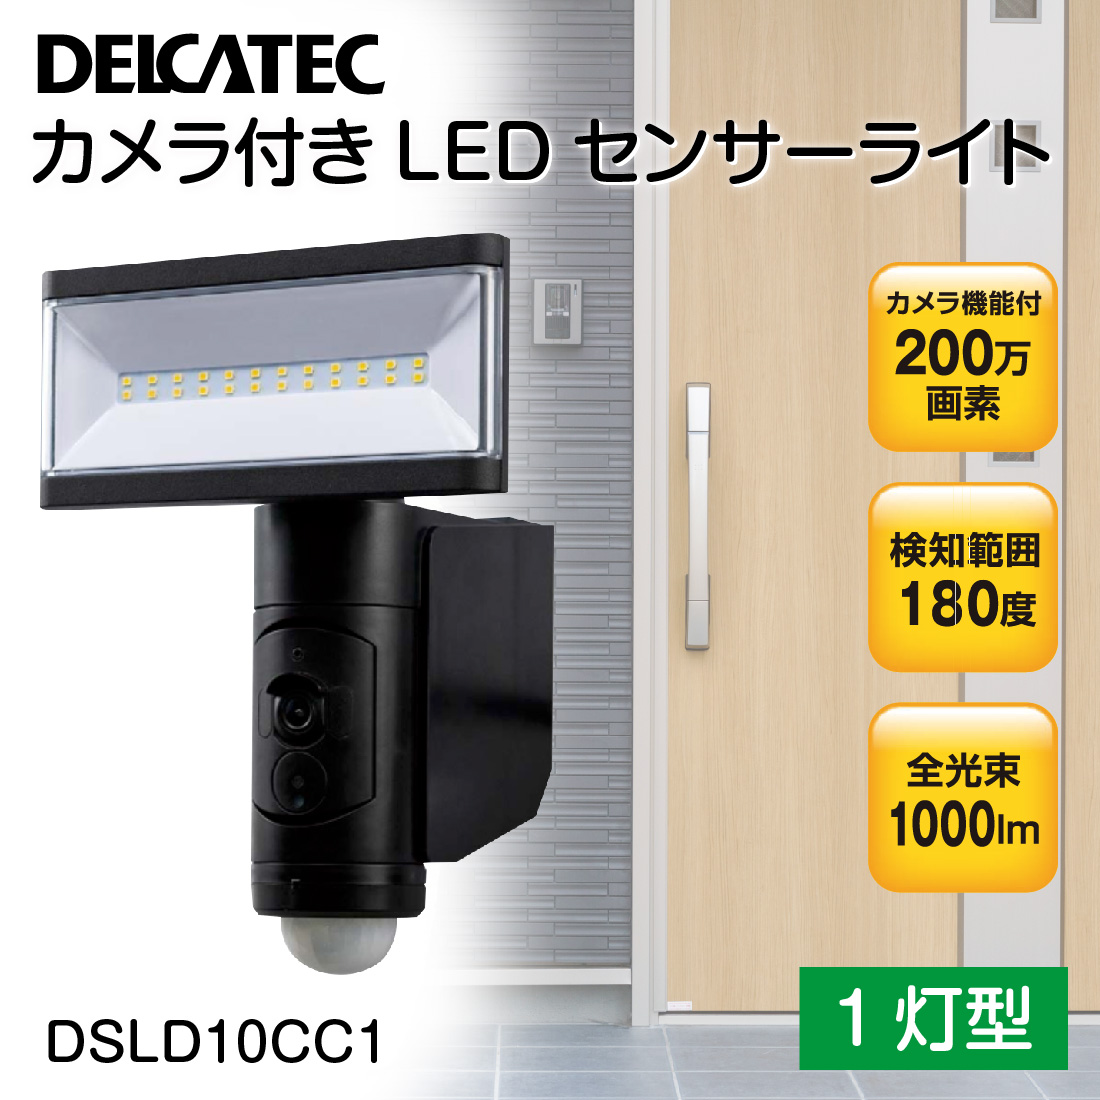 取寄品) DSLD10CC1 カメラ付LEDセンサーライト 1灯型 カメラ機能付き